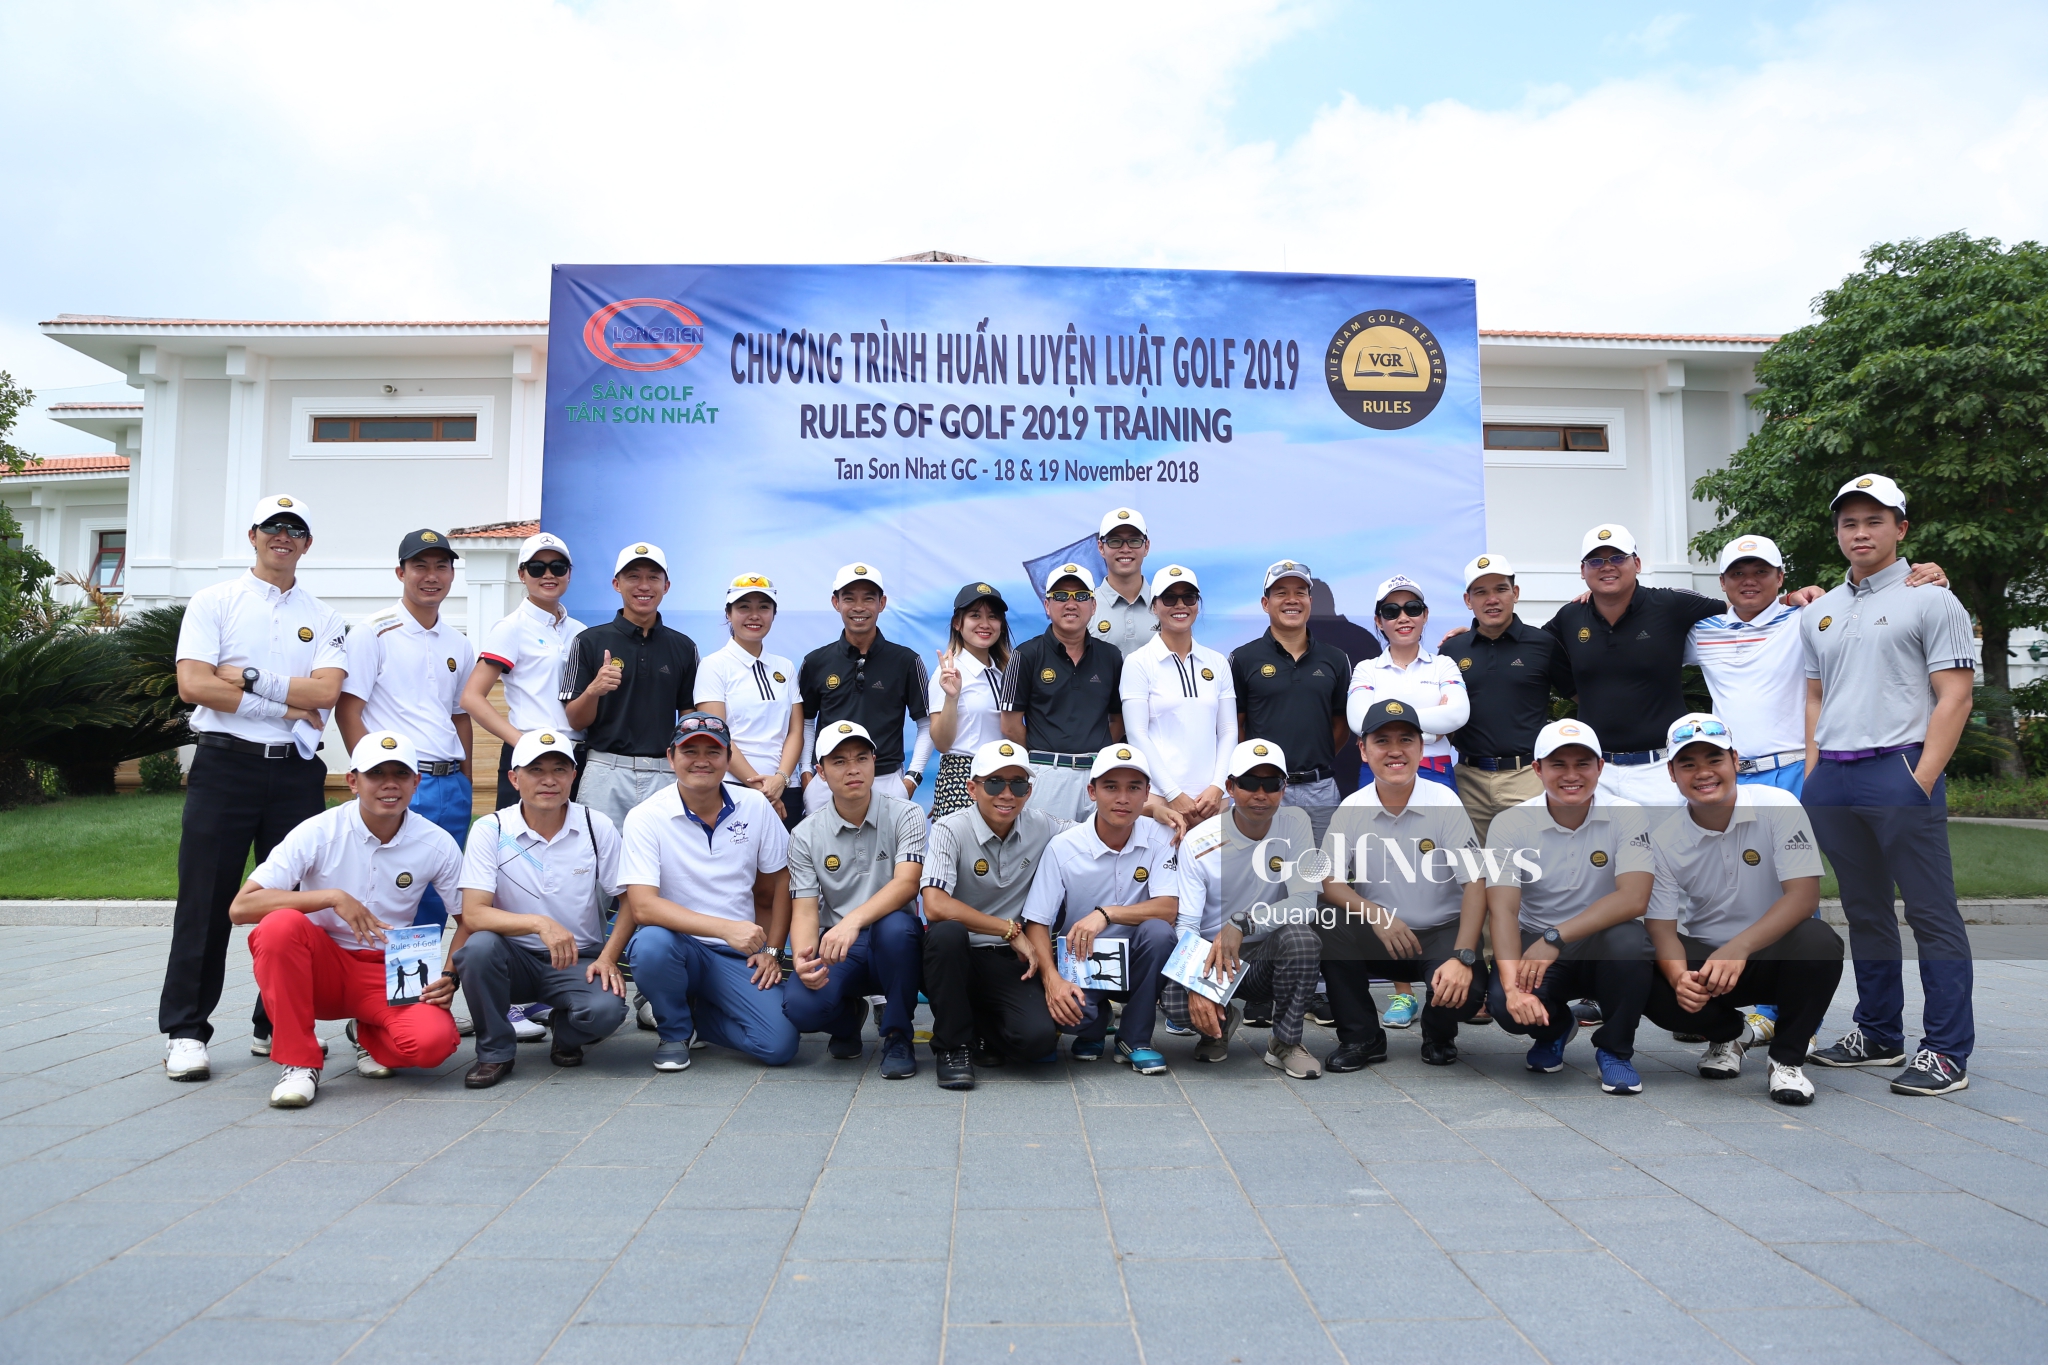 CLB trọng tài golf Việt Nam tổ chức Chương trình huấn luyện luật golf 2019